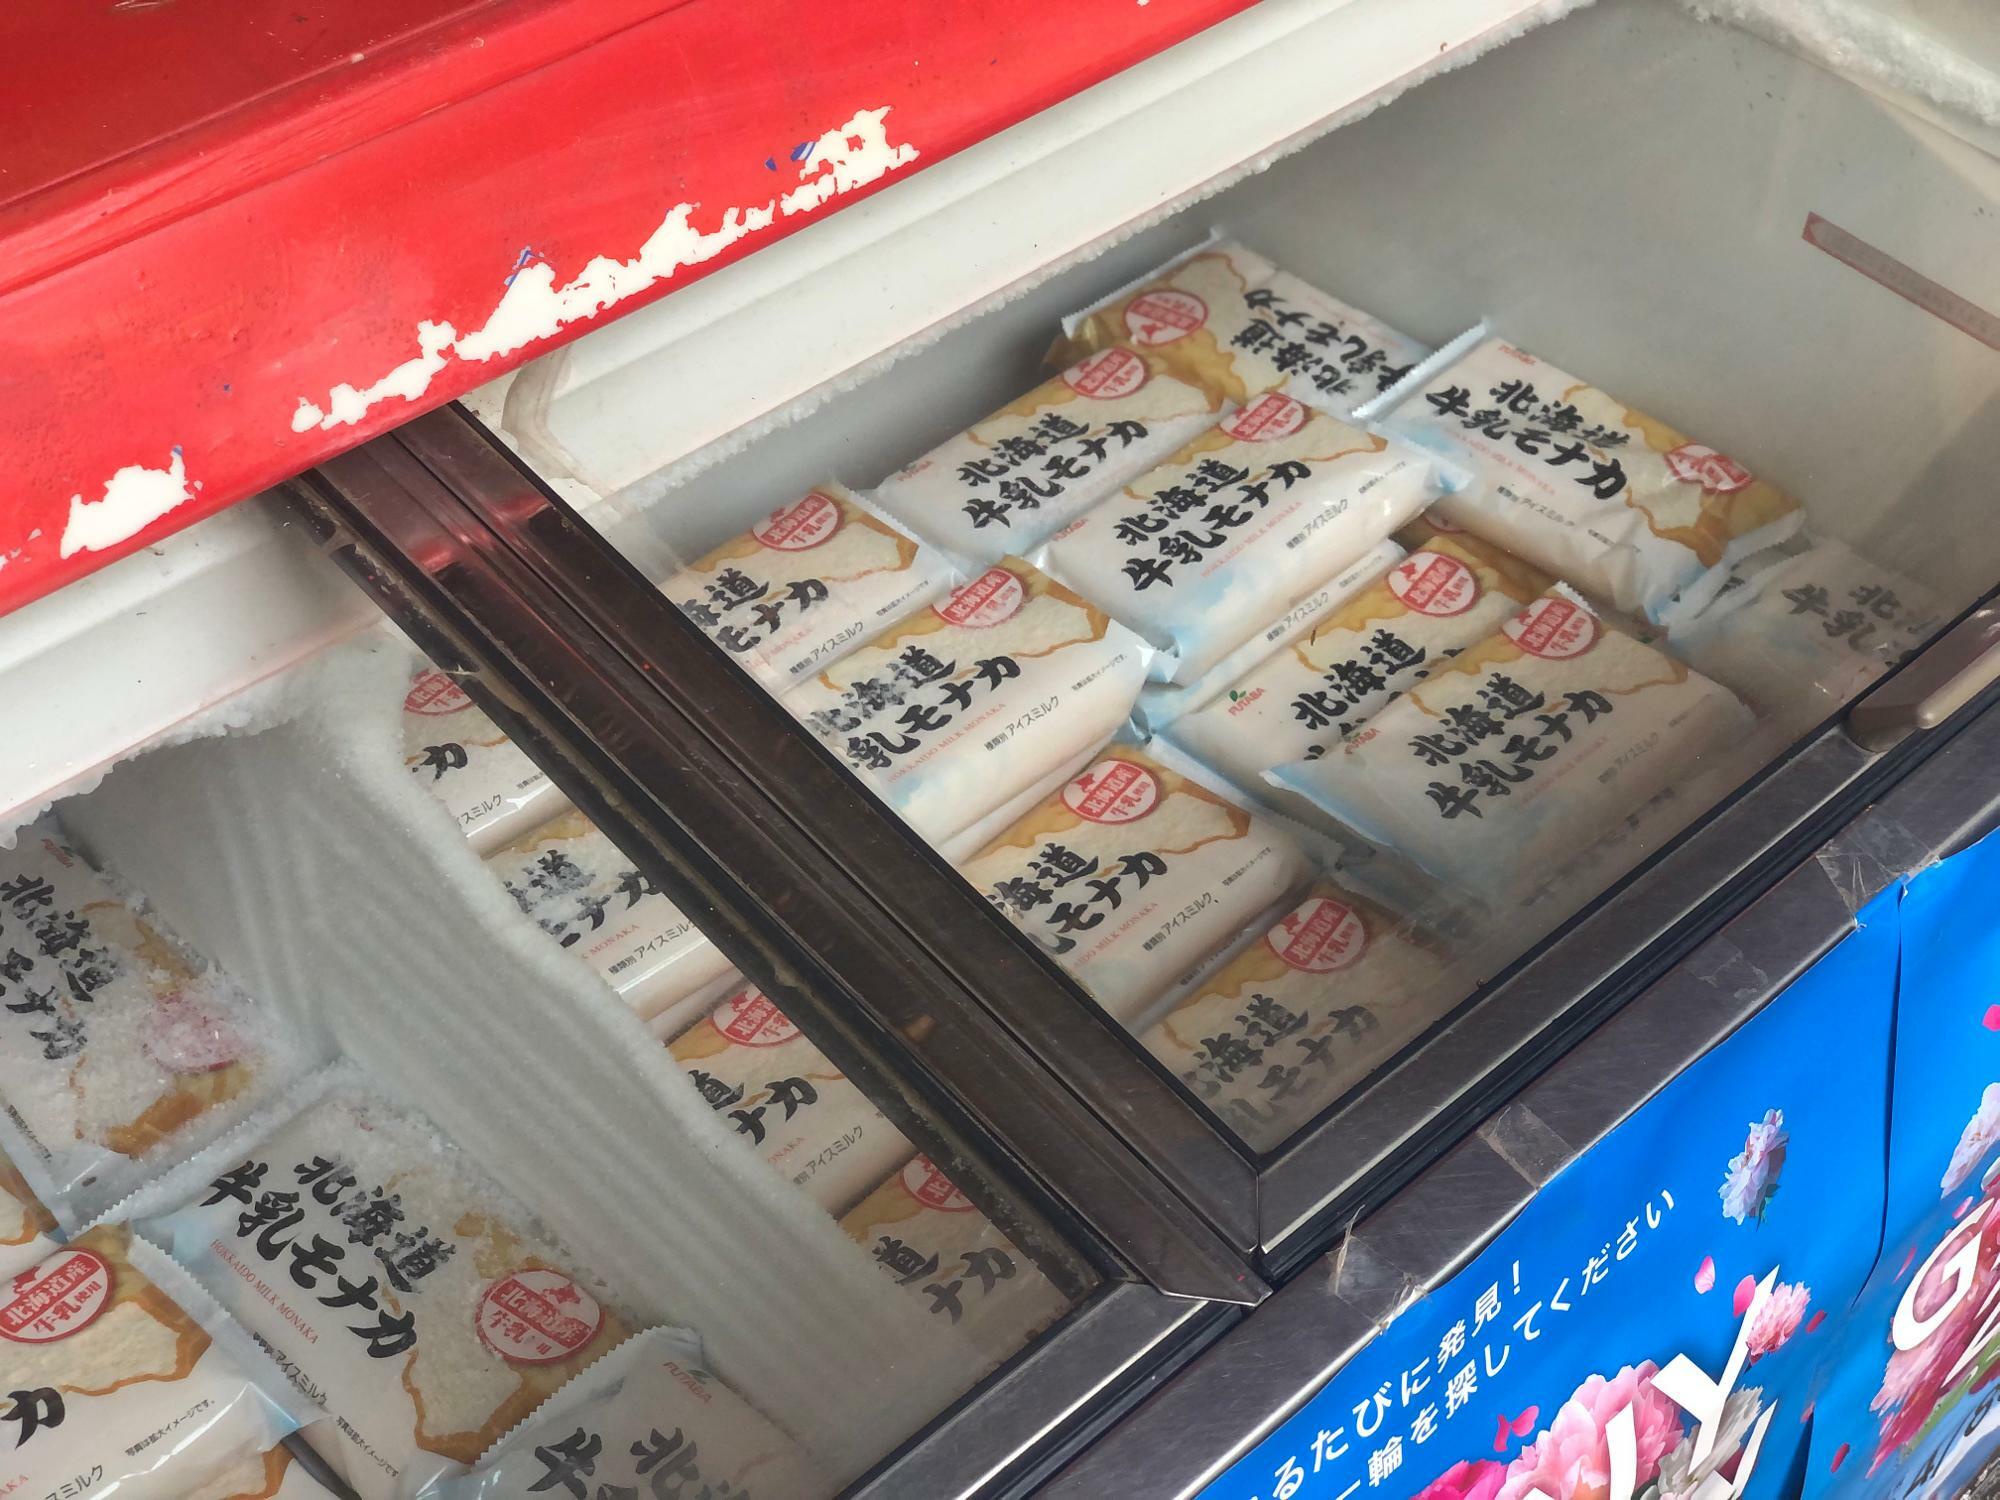 暑い日や、お子様にも嬉しいジャンボ最中アイスも販売されていました。